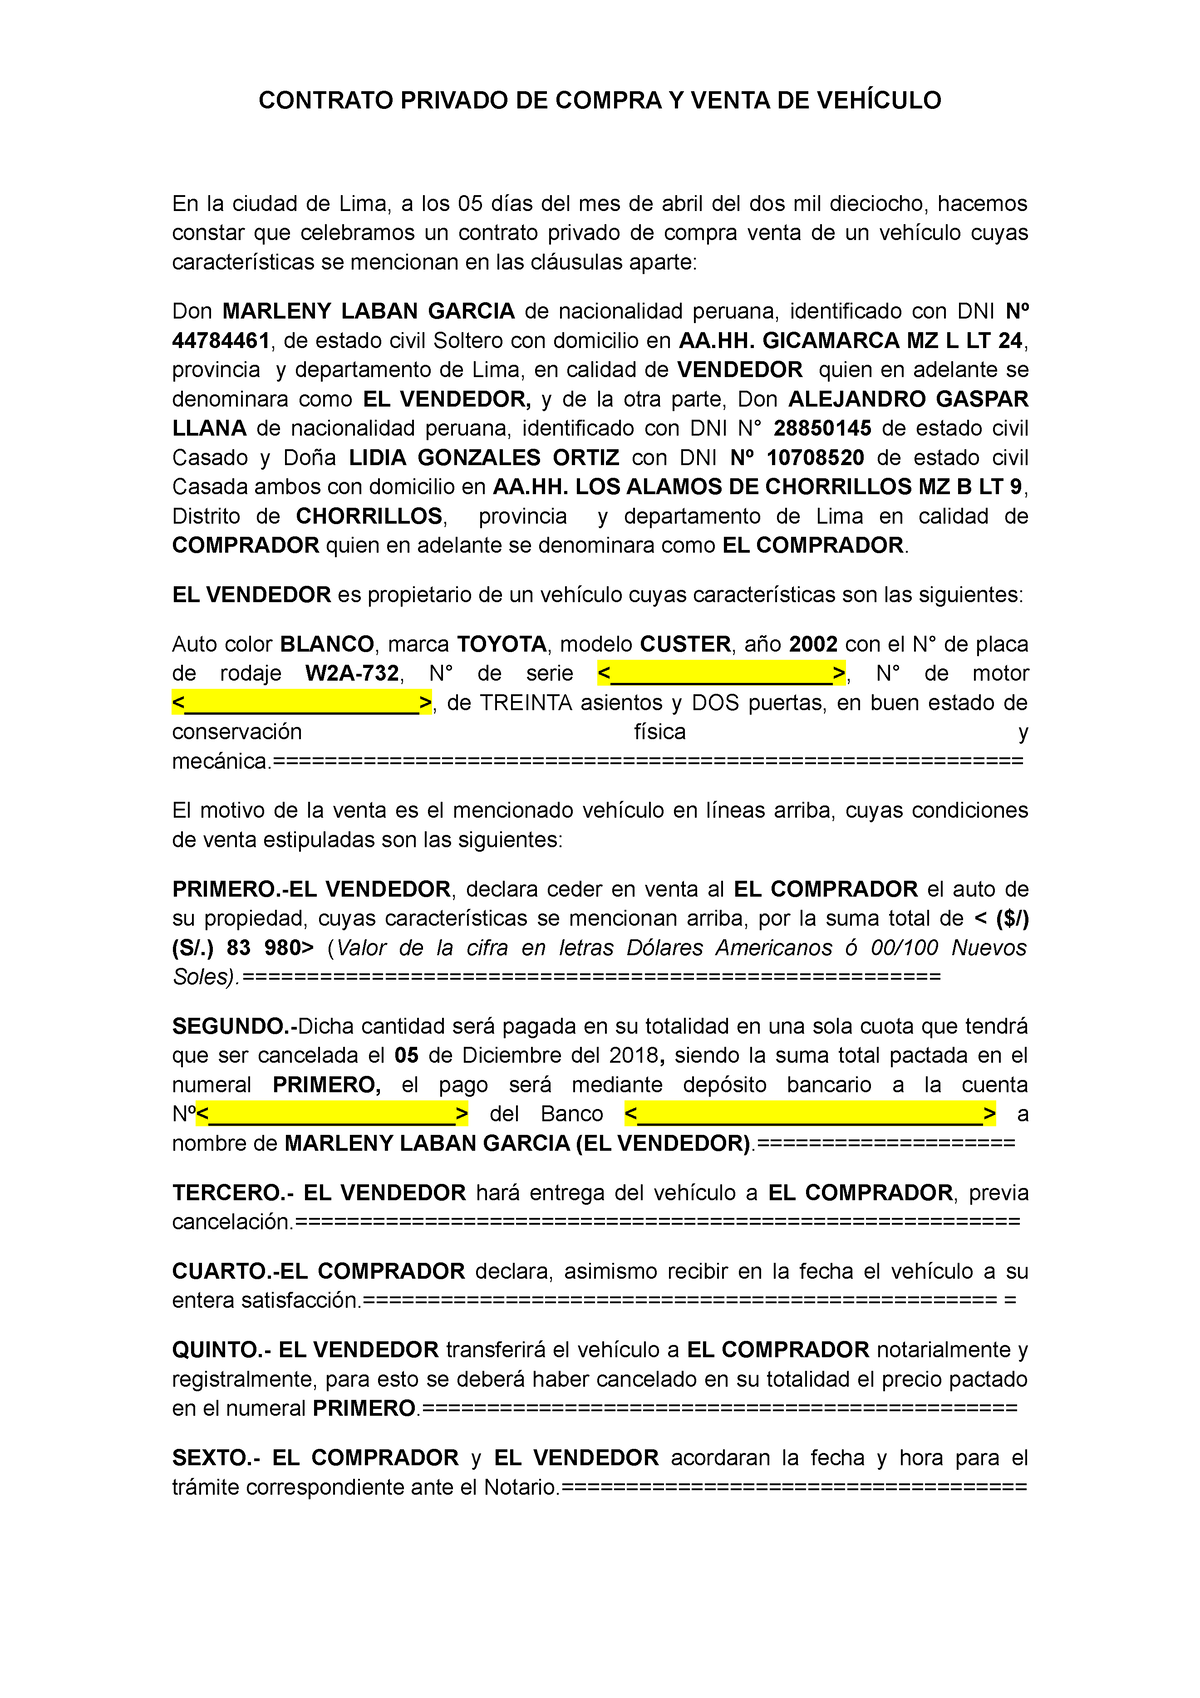 Modelo de Contrato Privado de Compra y Venta de Vehiculo Peru - CONTRATO  PRIVADO DE COMPRA Y VENTA - Studocu